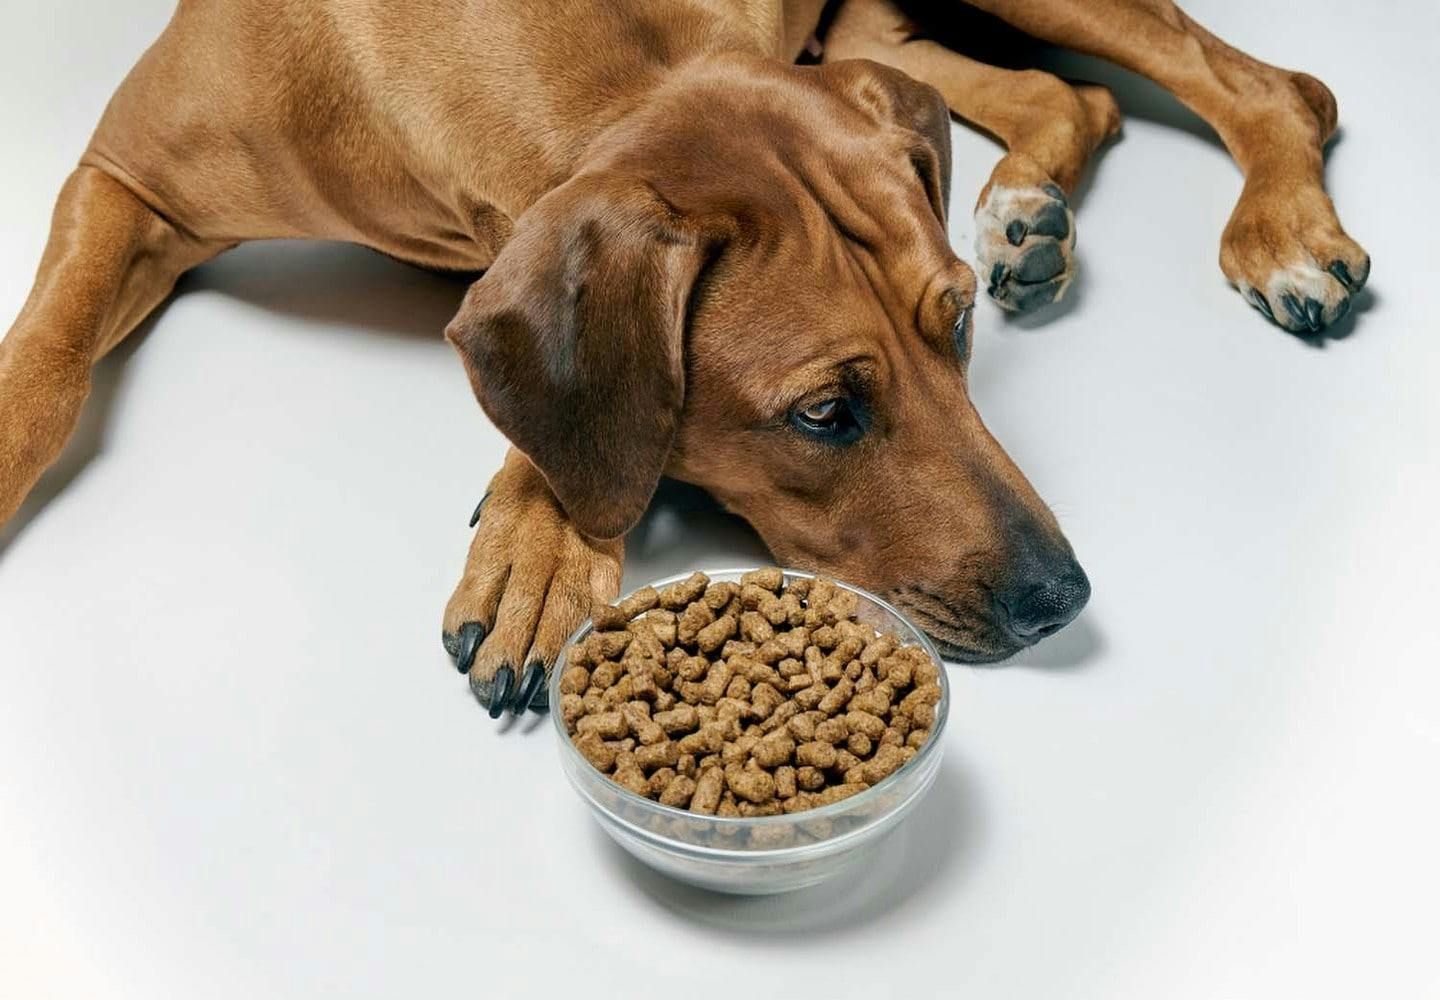 犬が急にご飯を食べなくなる理由とは 考えられる病気や病院に行くべき症状について解説 獣医師監修 Illness 病気 わんクォール